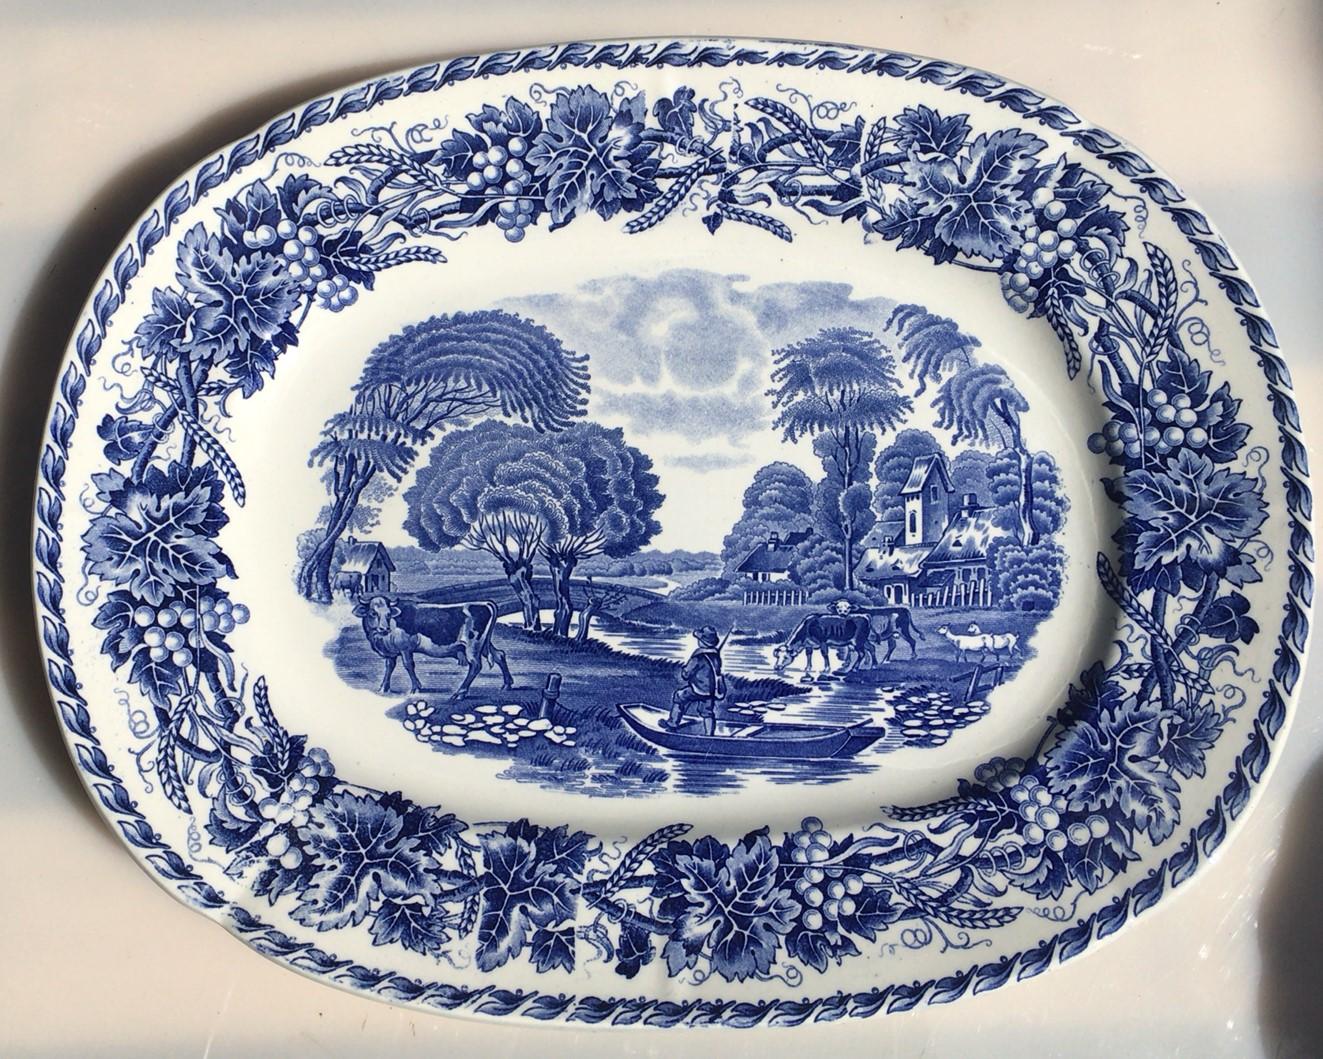 Grand plat à vaisselle bleu et blanc du 19e siècle signé Utzschneider & Cie (Sarreguemines)
Modèle Helvetia.
Scène avec un pêcheur, des vaches, des arbres et une rivière.
Bordure avec des raisins et du blé.
Mesures : 15